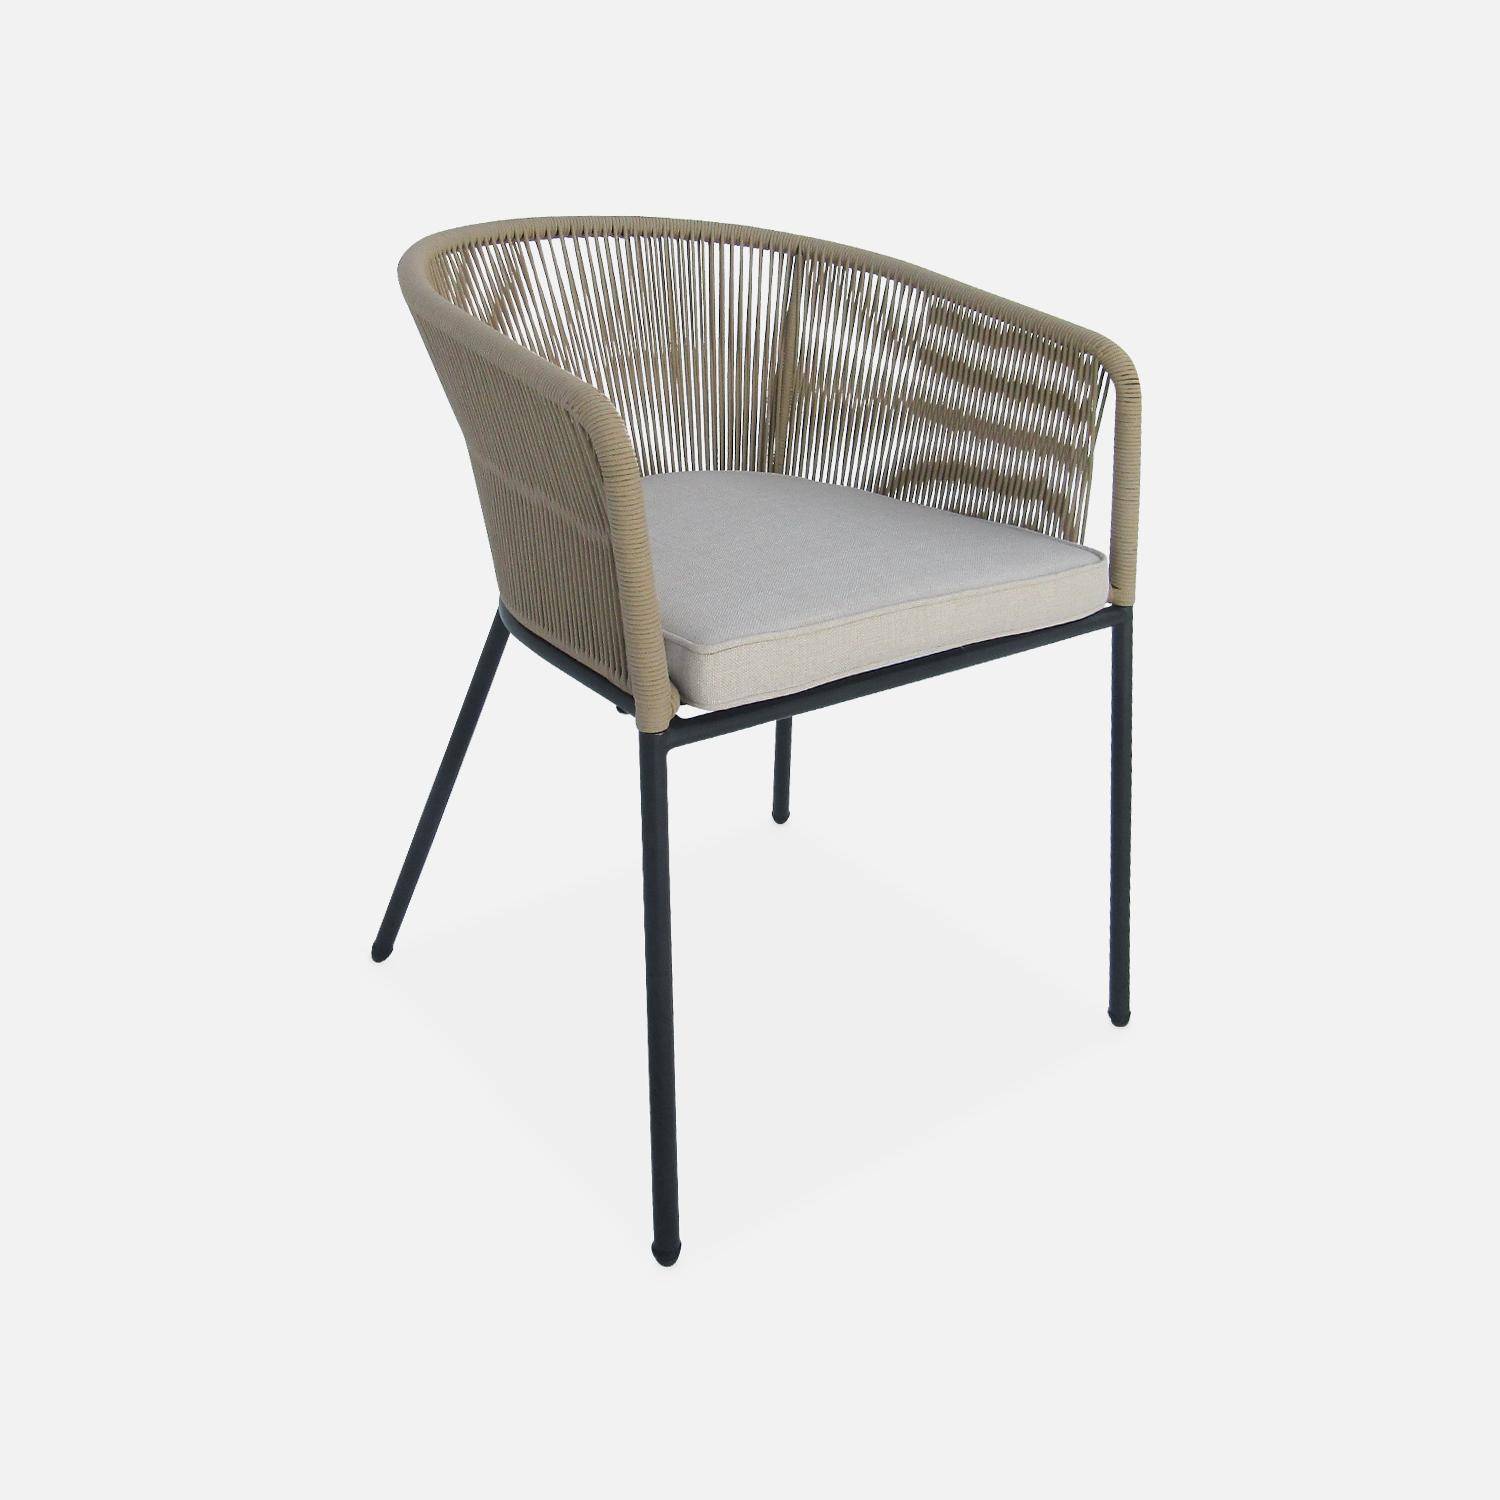 Table à manger bois d'acacia ronde, intérieur / extérieur + 4 fauteuils en corde beige et acier Photo6